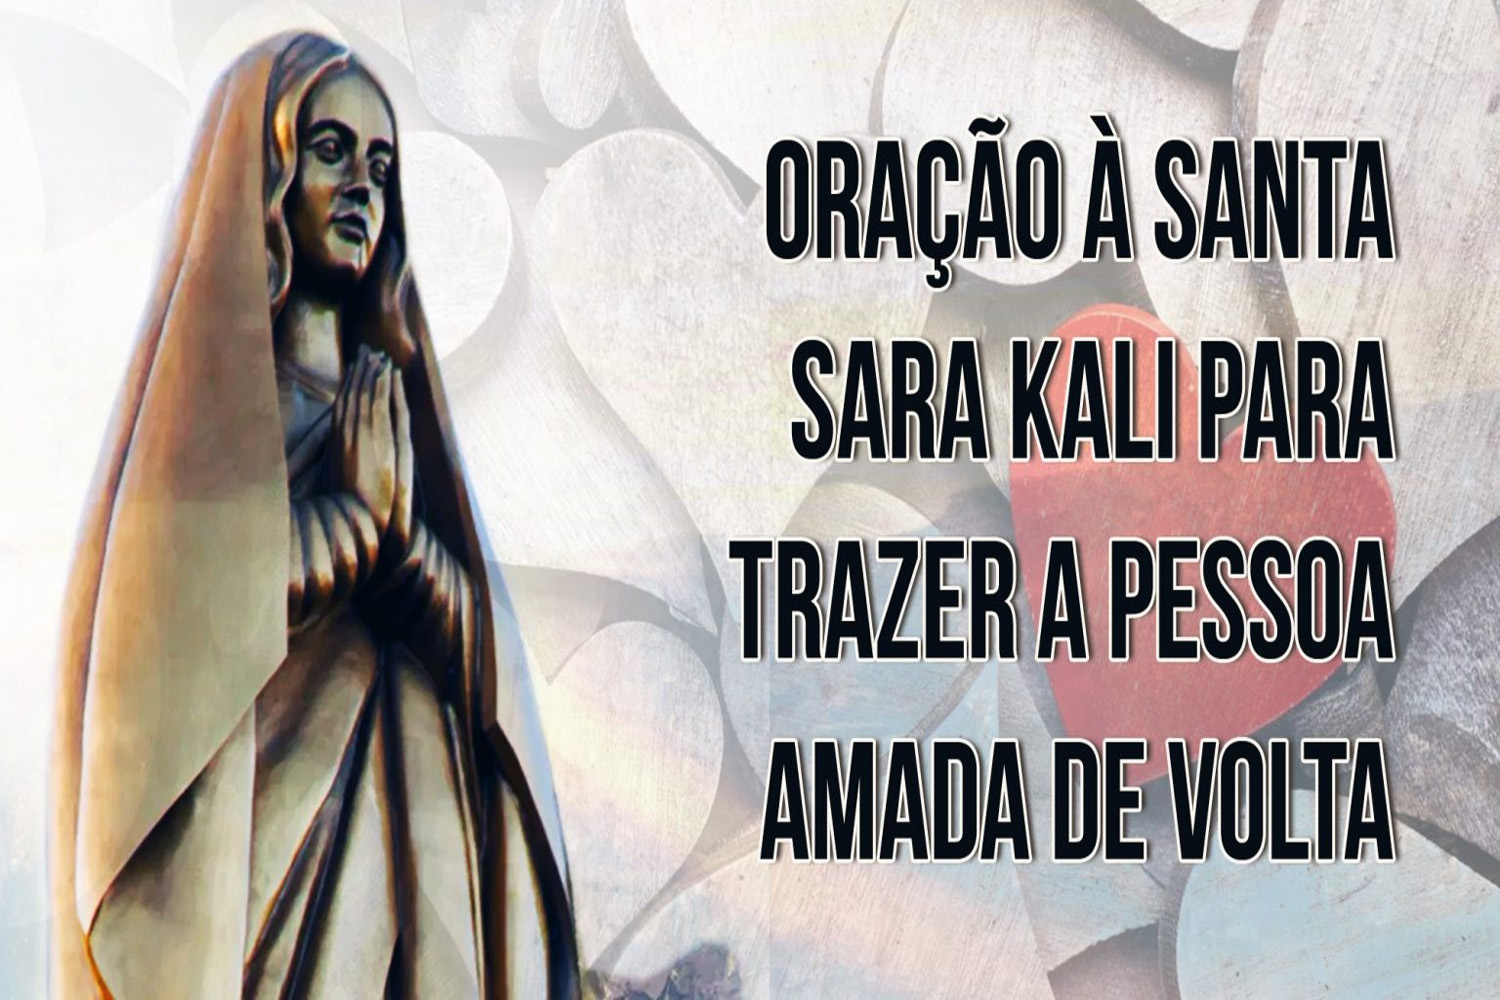 Oração à Santa Sara Kali para Trazer a Pessoa Amada de Volta